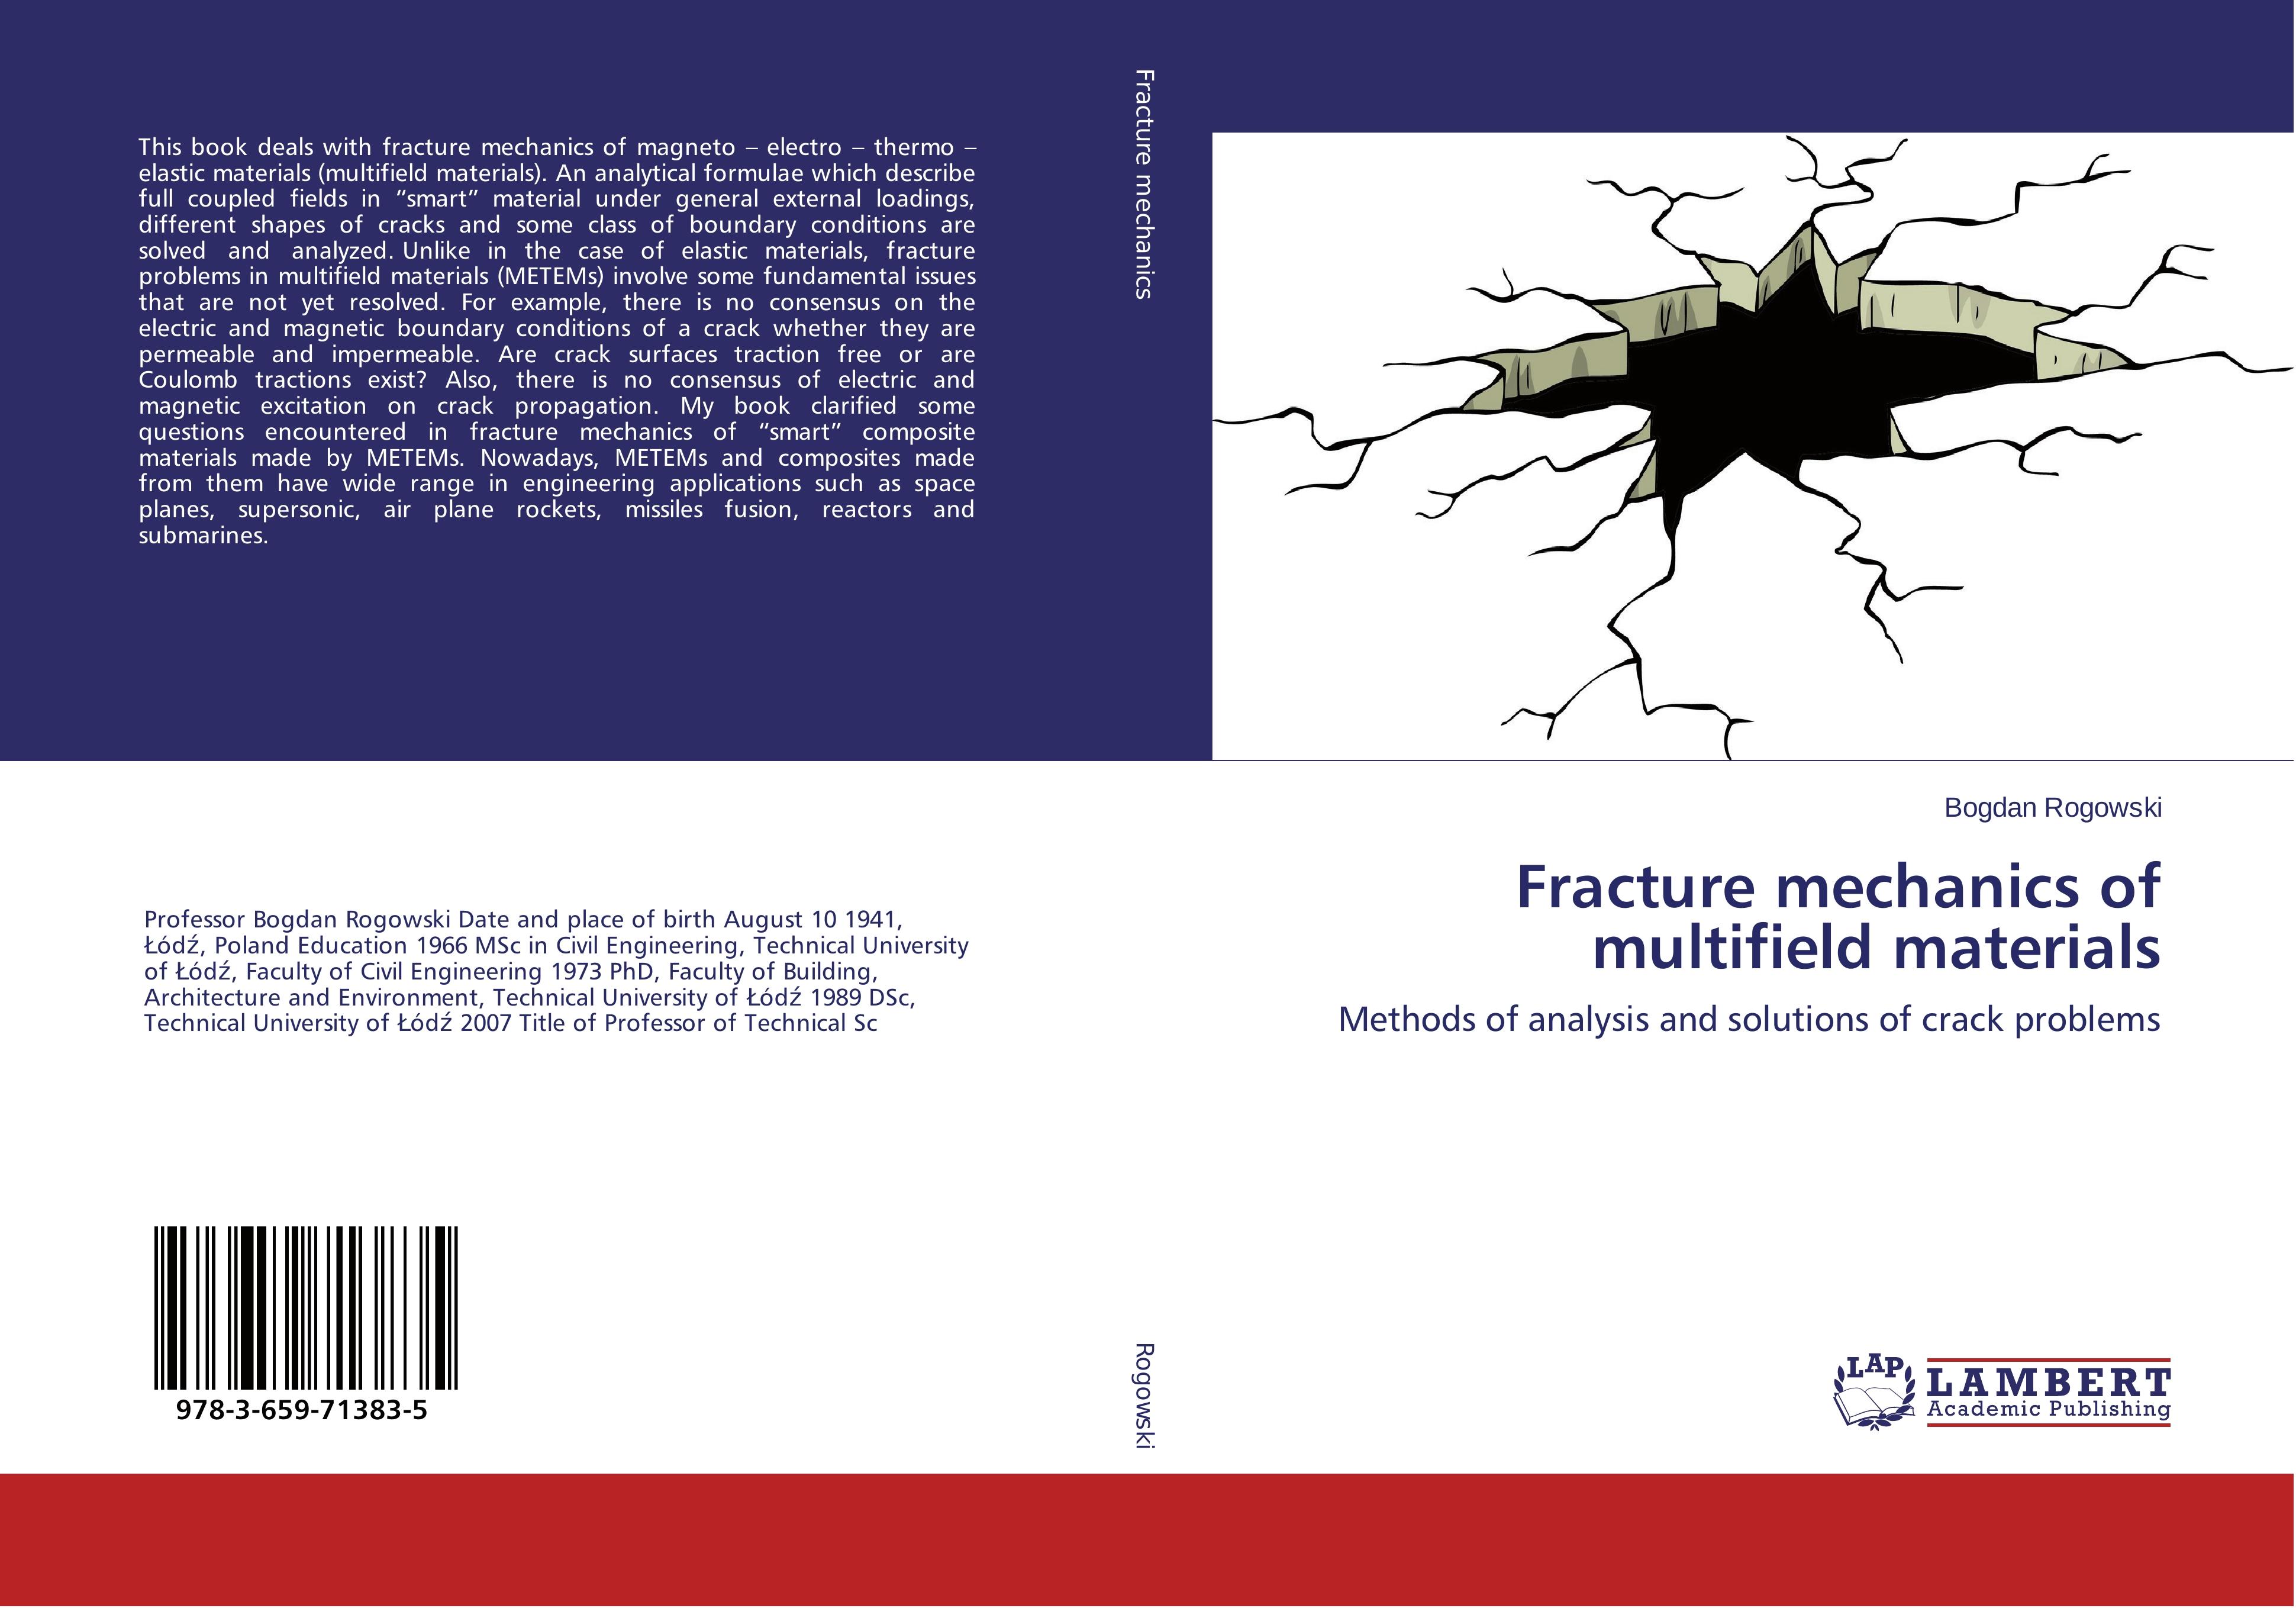 Fracture mechanics of multifield materials - Bogdan Rogowski